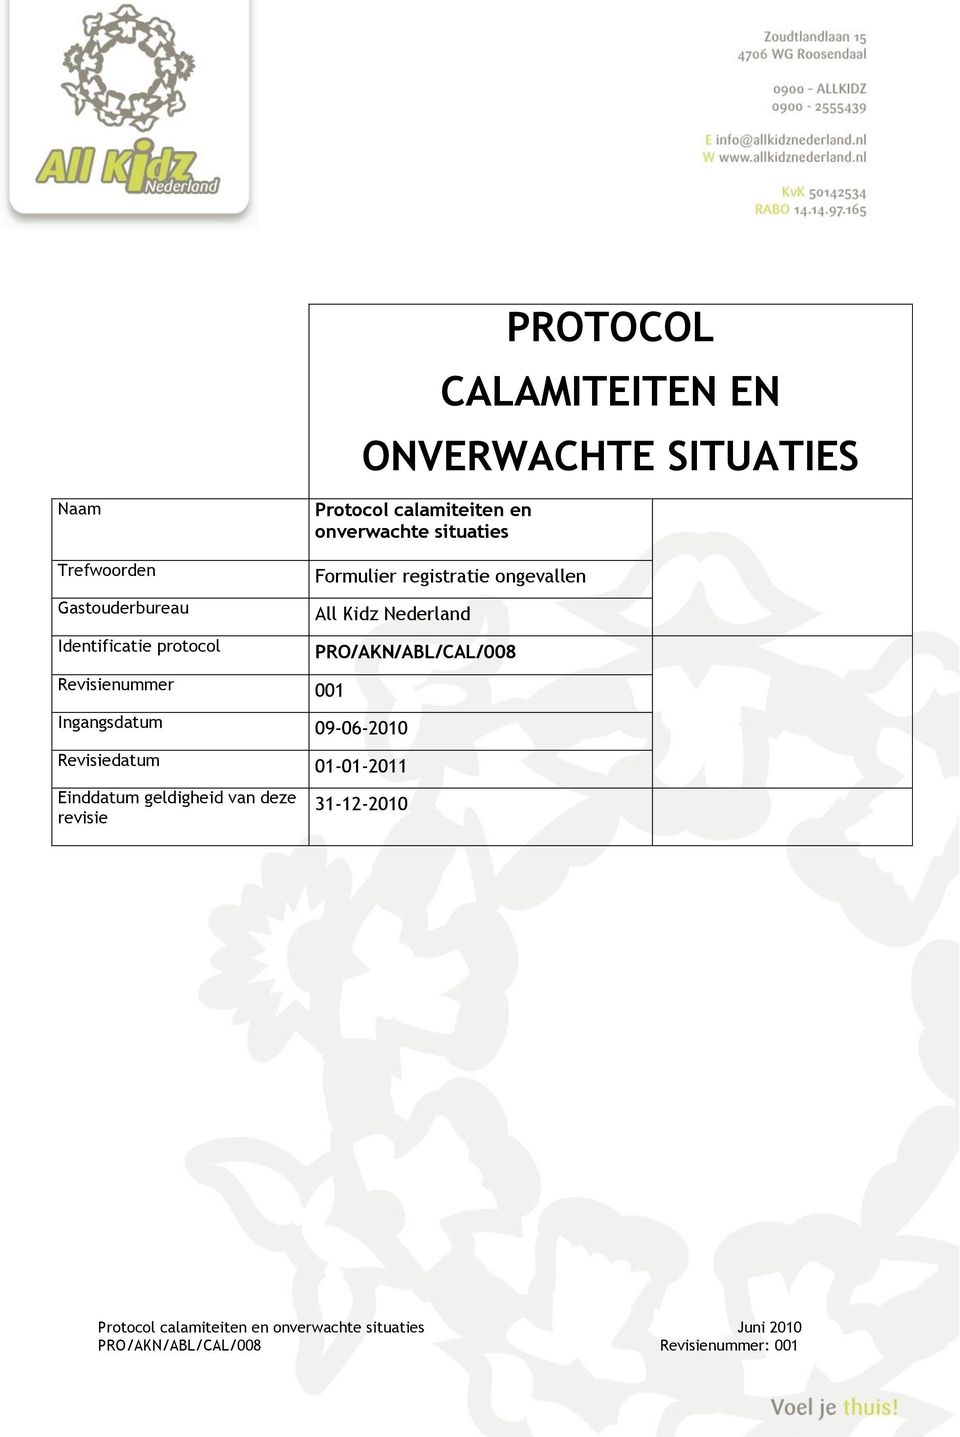 registratie ongevallen All Kidz Nederland PRO/AKN/ABL/CAL/008 Revisienummer 001